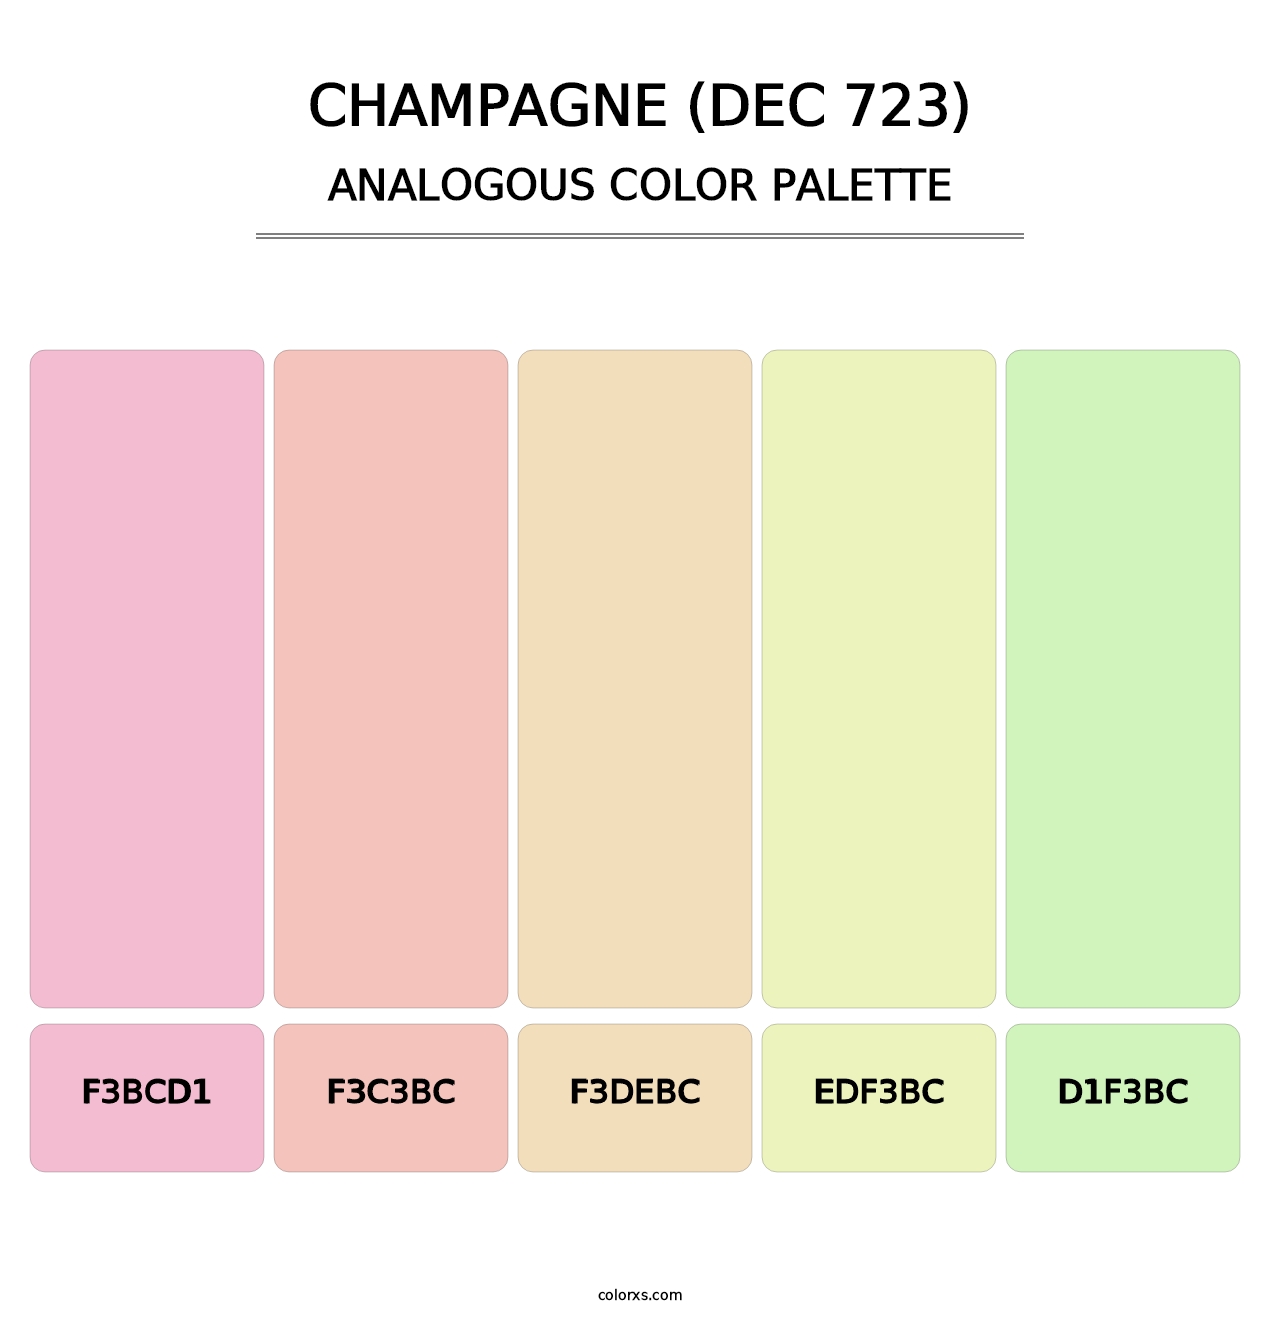 Champagne (DEC 723) - Analogous Color Palette